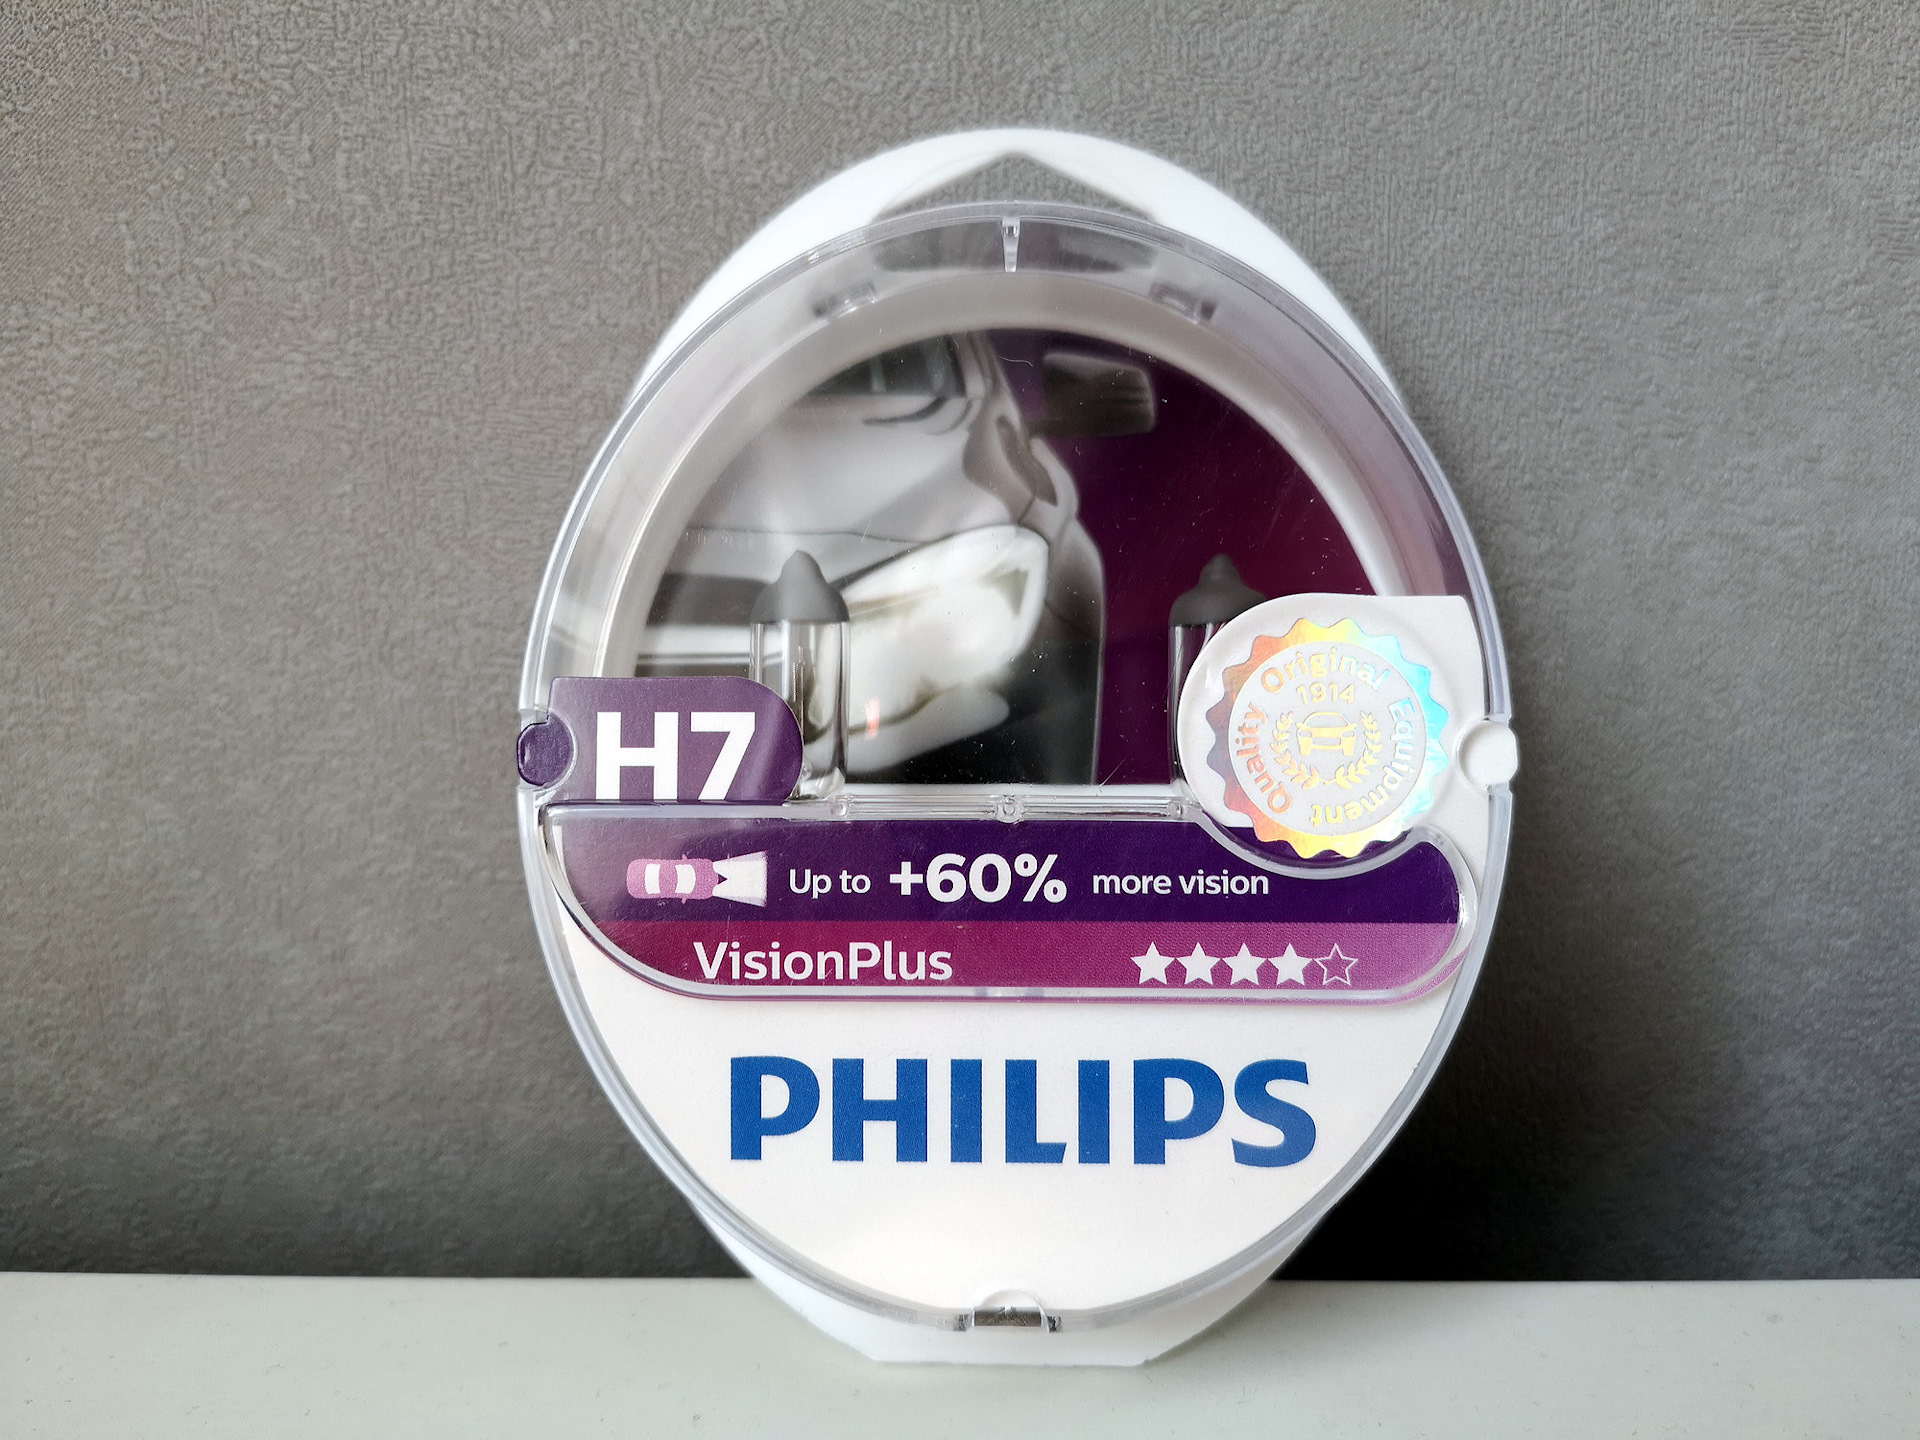 Филипс вижн. Philips h7 Vision Plus +60. Лампа h7 Филипс Vision +60. Philips Vision Plus. Philips Vision Plus пылесос.